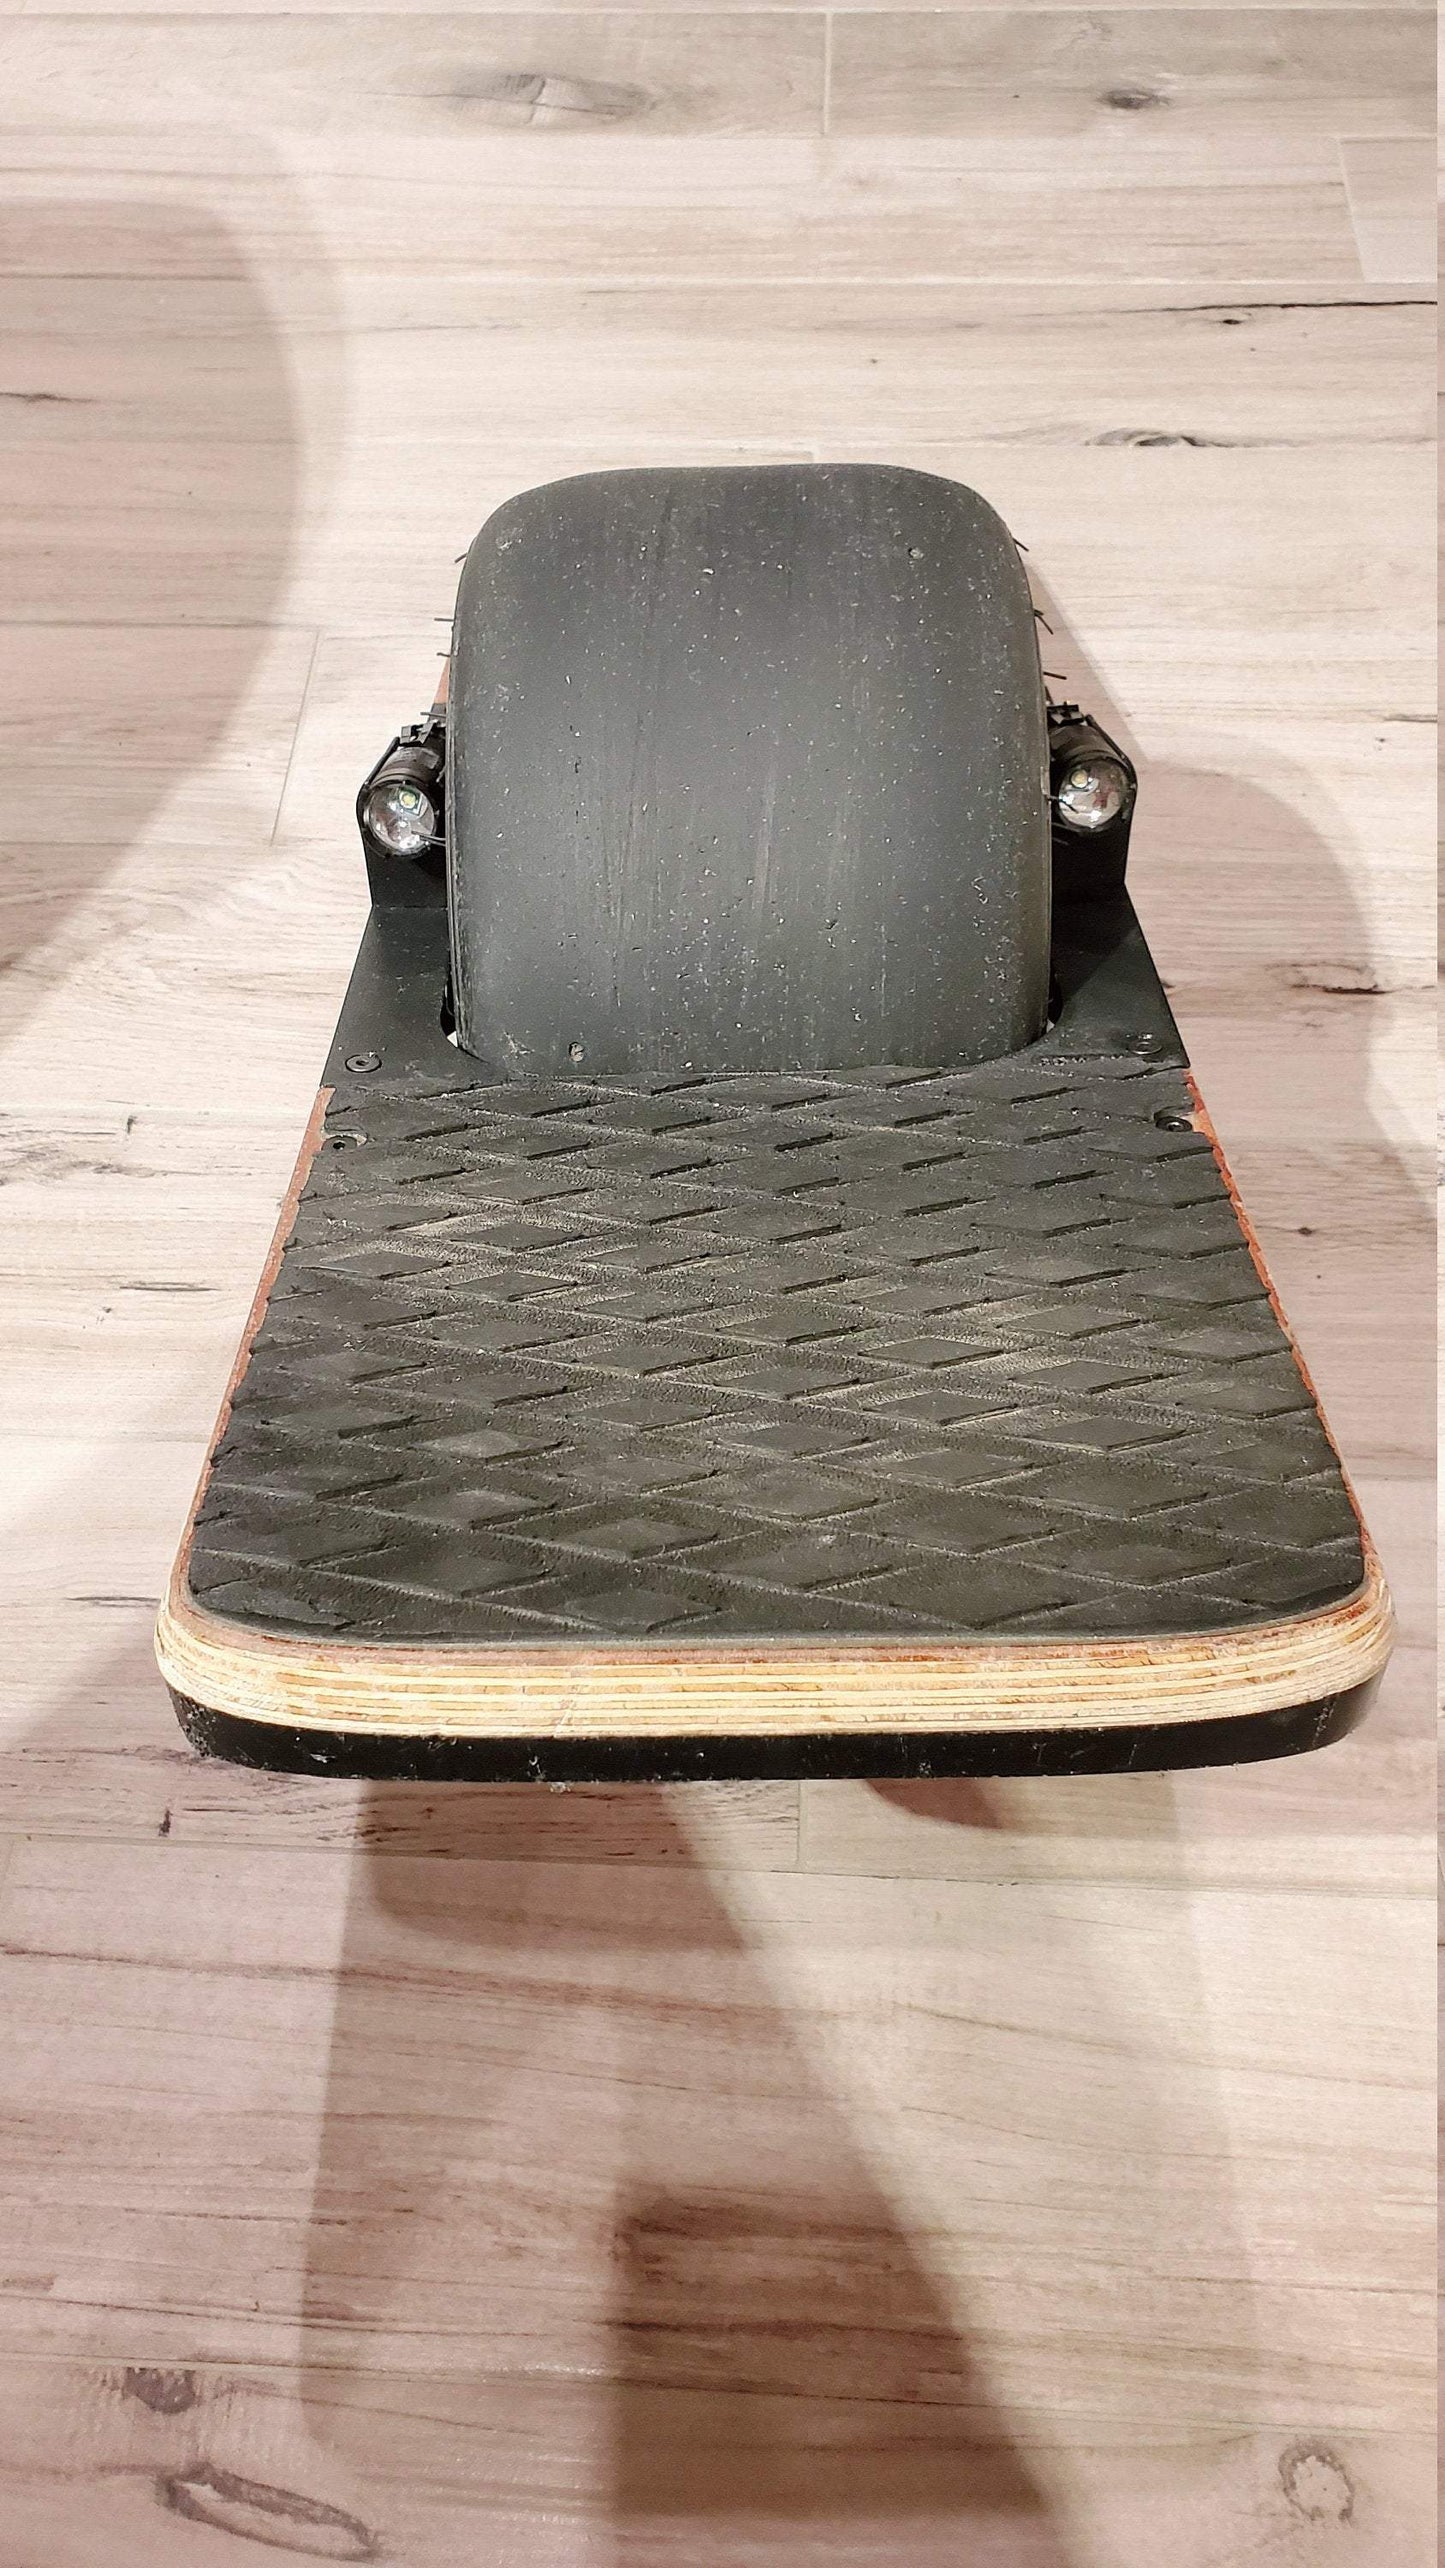 Fender Delete + Flashlight Kit (for Onewheel XR/Plus/V1) - FloaterShack